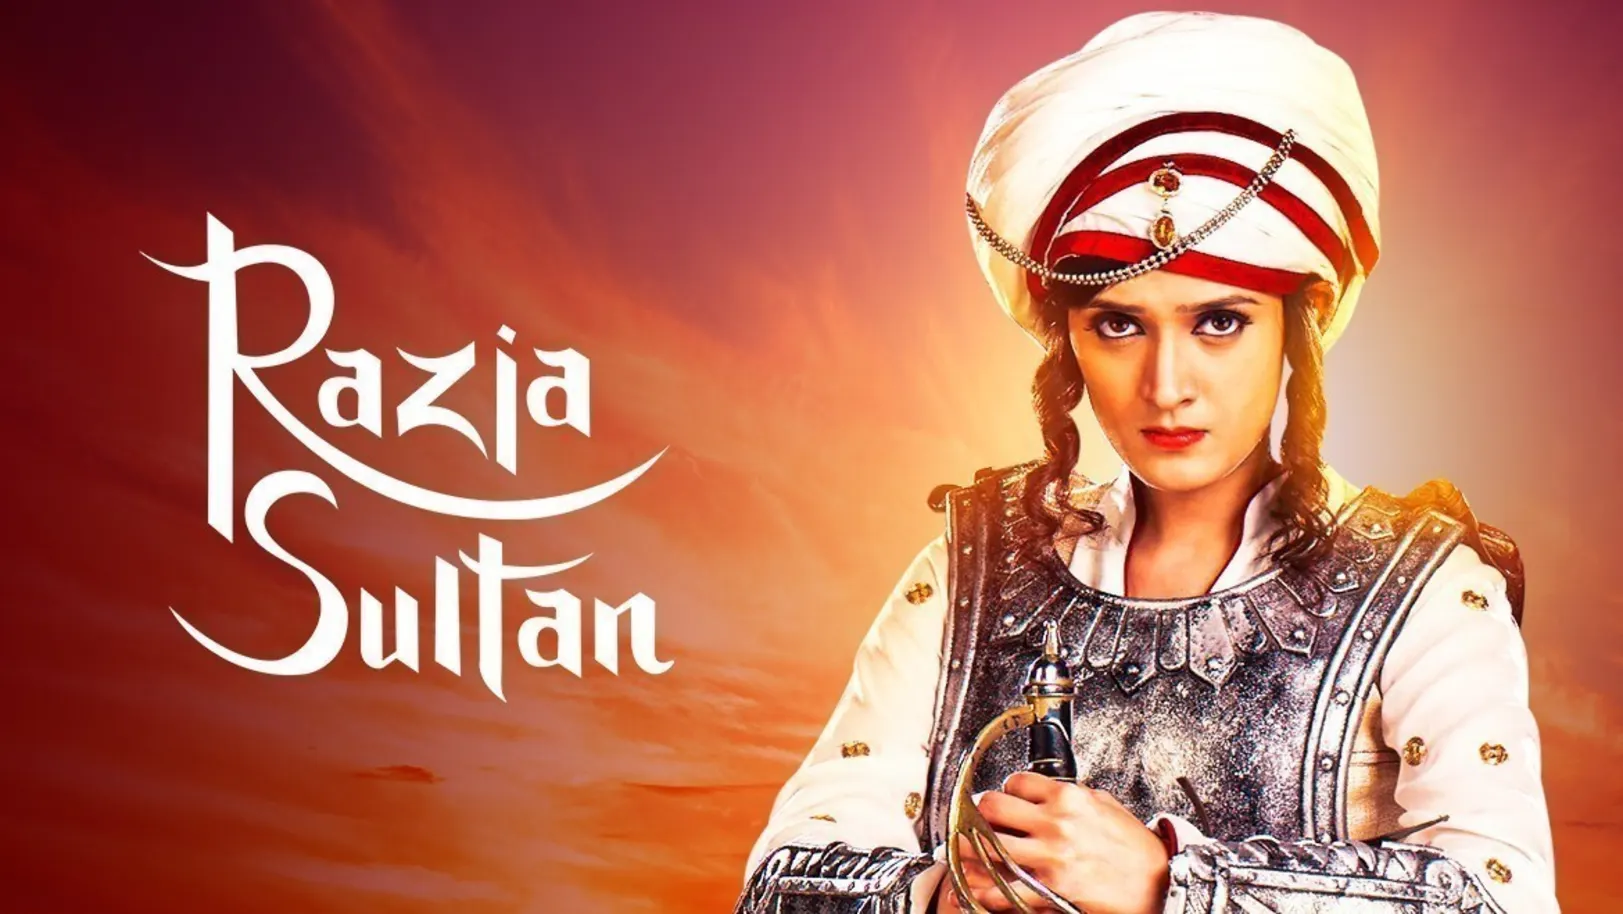 Razia Sultan TV Show